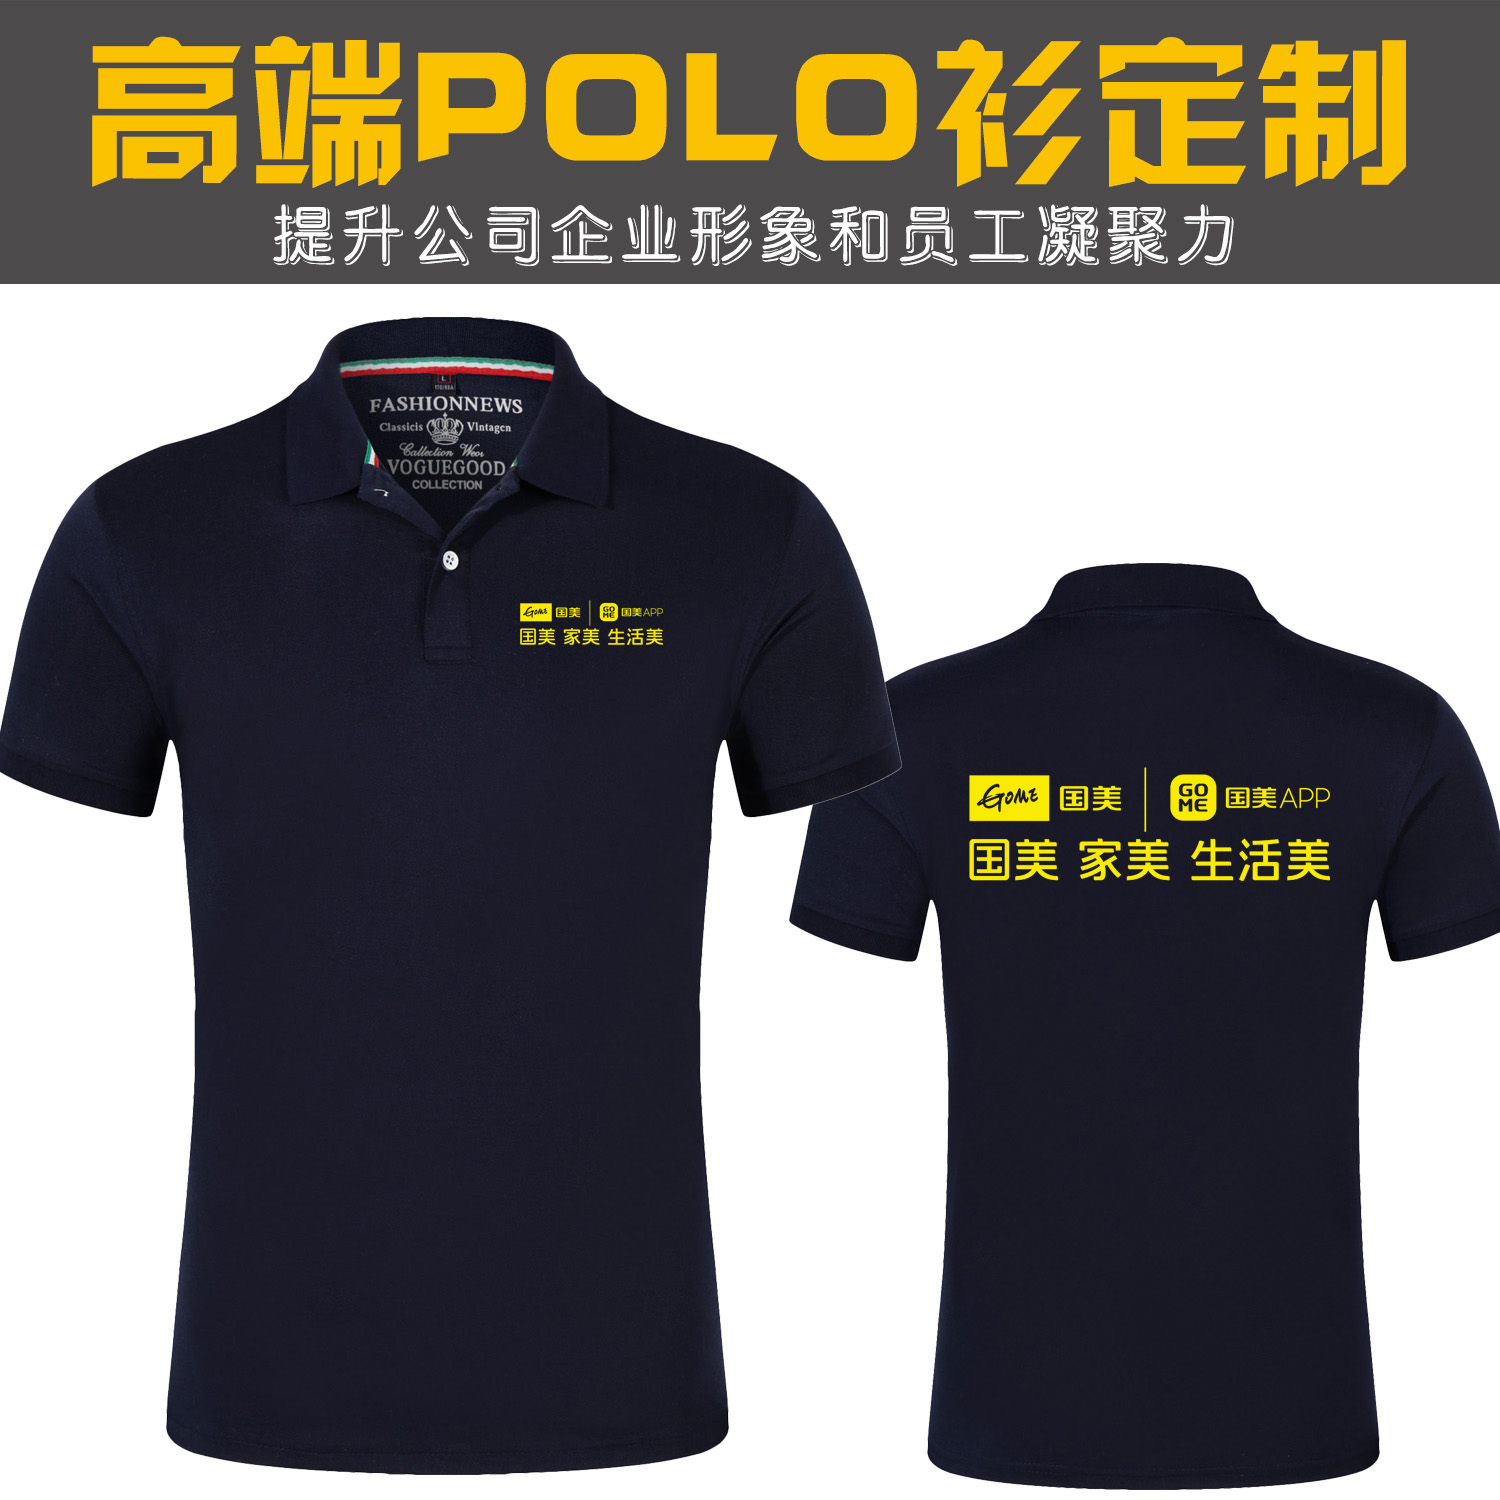 夏季国美电器新款工作服定制短袖T恤日日顺广告文化POLO衫印logo